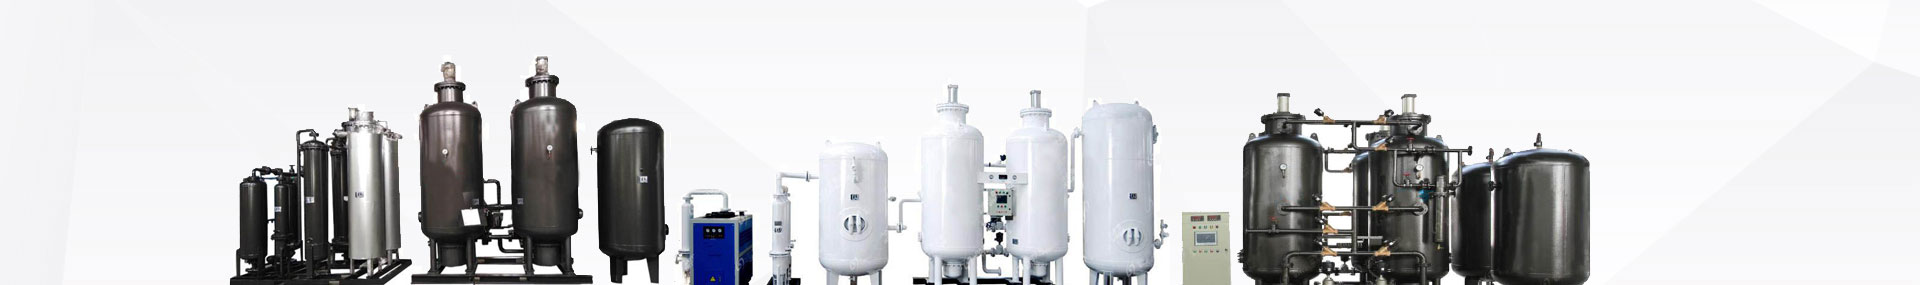 压缩空气干燥器,无热再生干燥器,微加热再生干燥器,有热再生干燥器